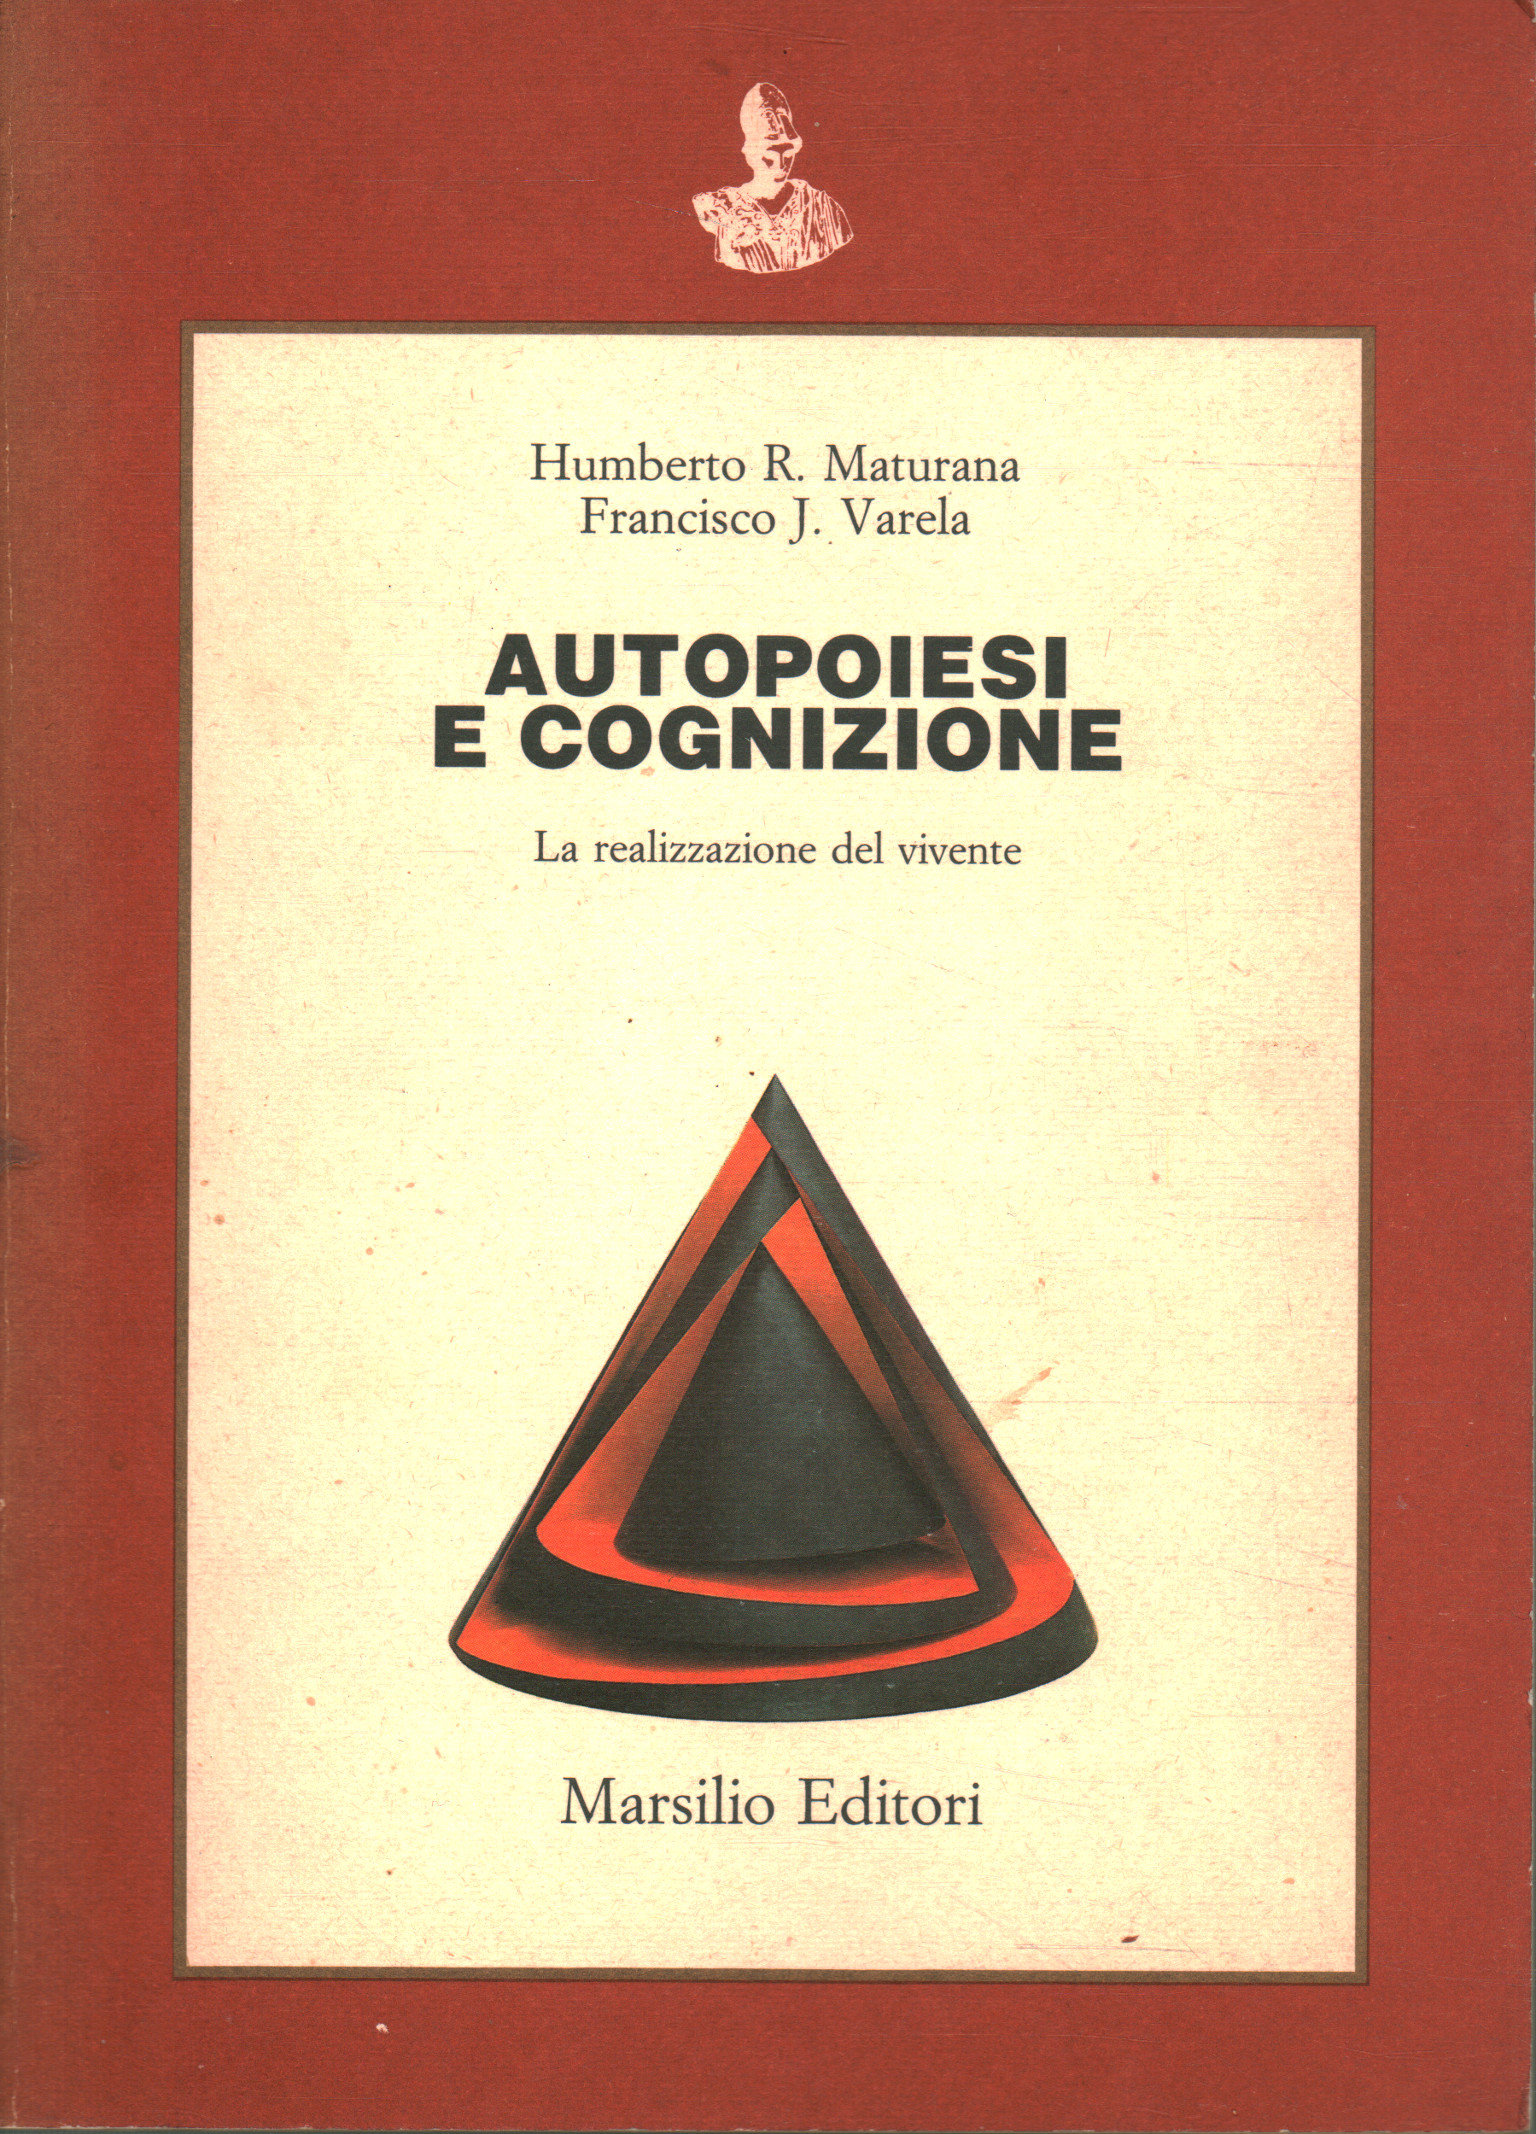 Autopoiesi e cognizione La realizzazione del vivente - Humberto R. Maturana, Francisco J. Varela